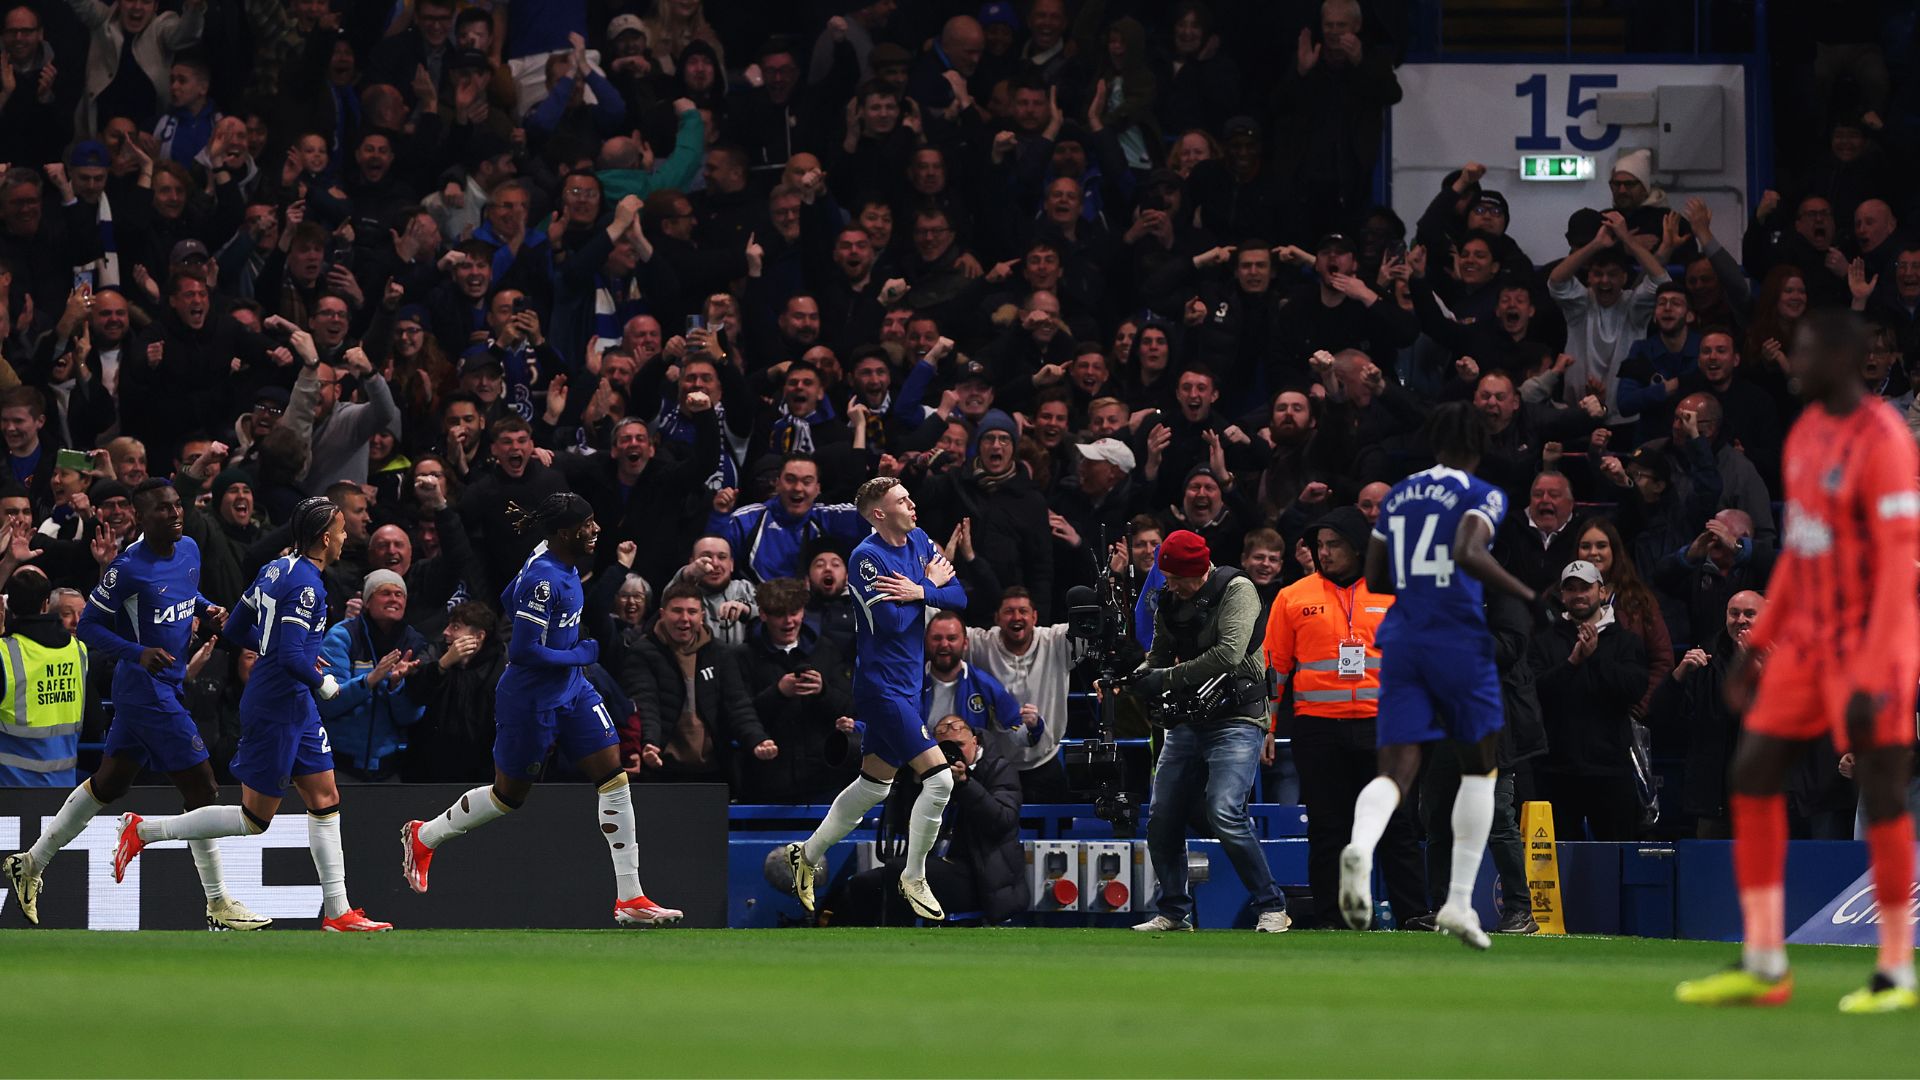 Cole Palmer comemorando um de seus gols marcados contra o Everton (Crédito: Getty Images)